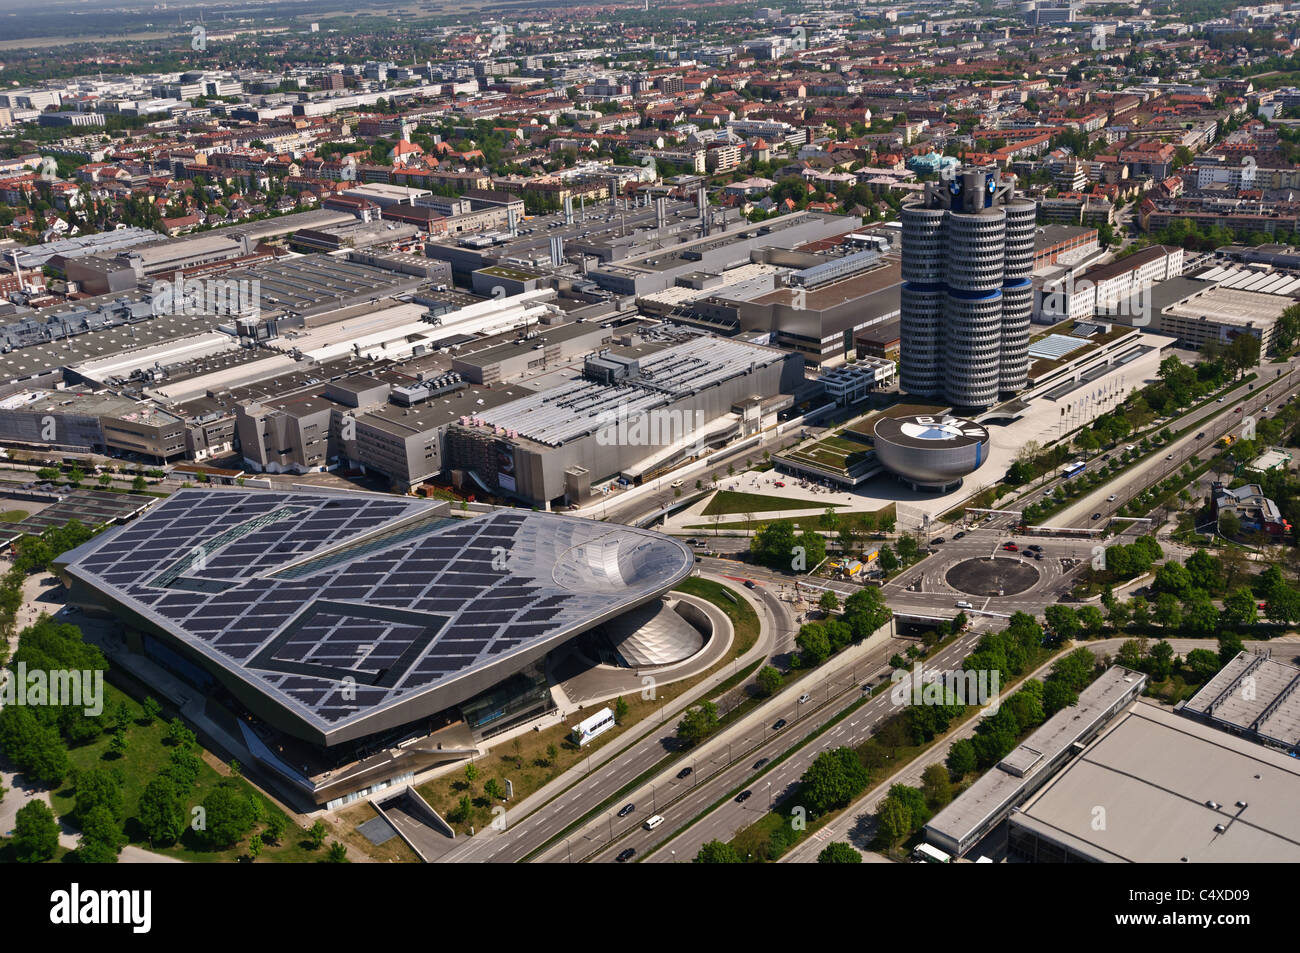 BMW Headquarters and BMW Welt (BMW World) - Munich, Germany Stock Photo